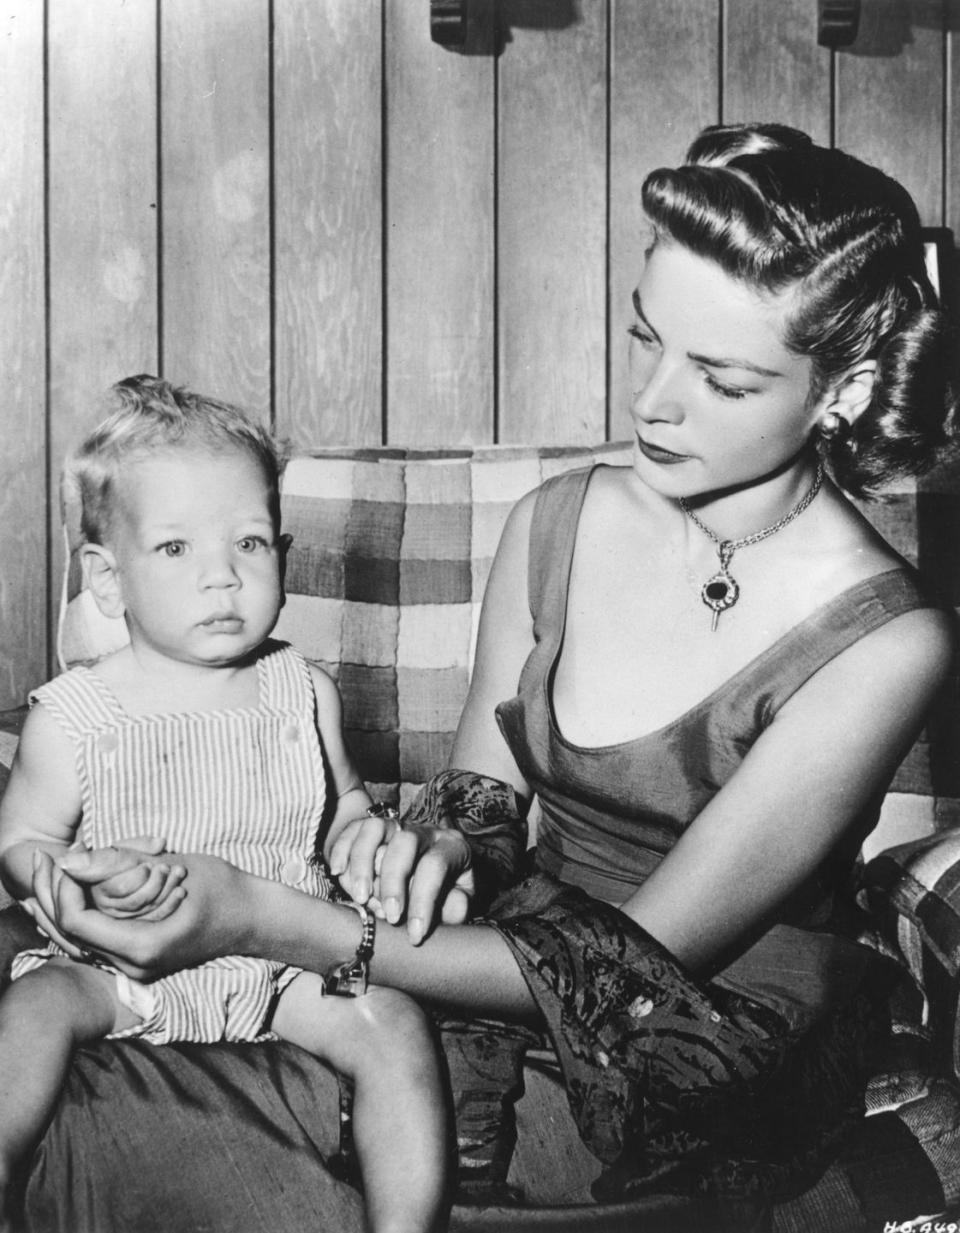 1949: A Baby Boy